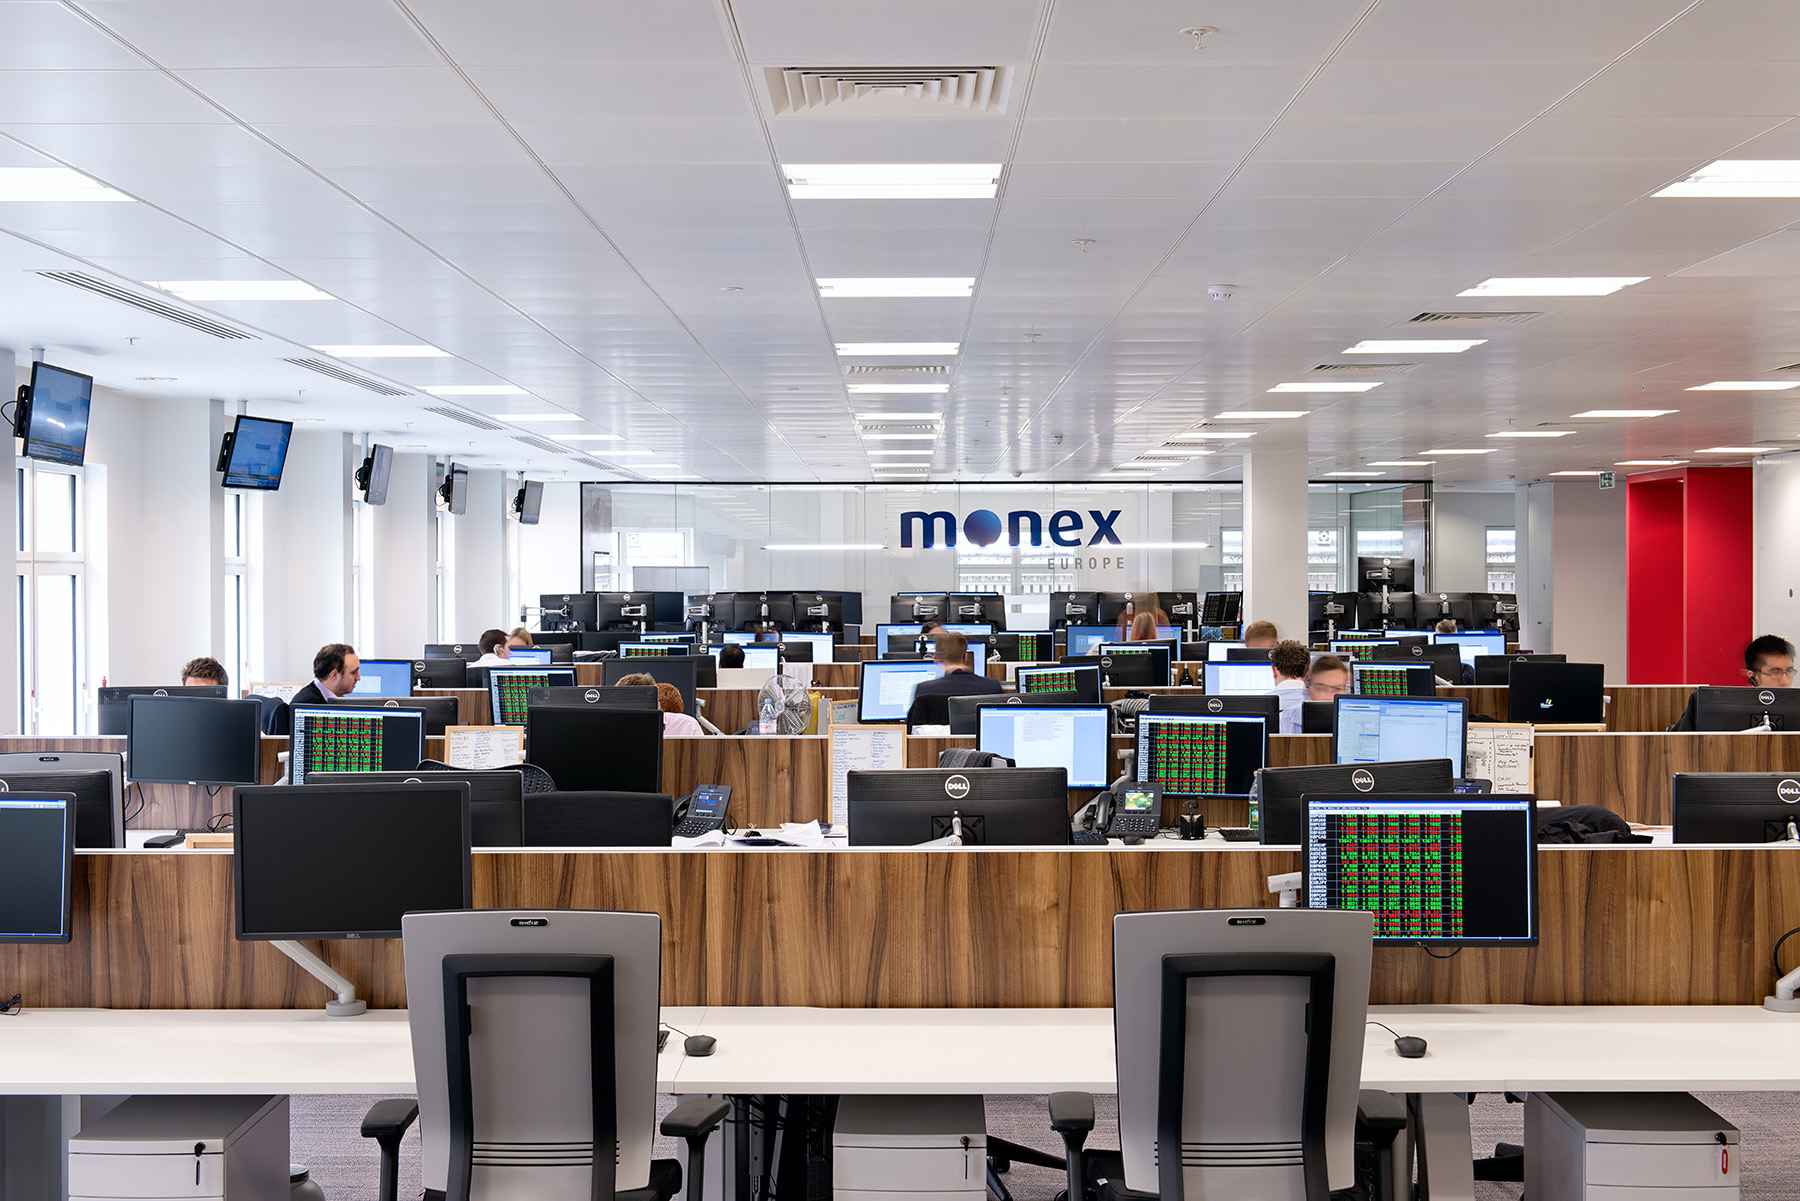 مونيكس جروب Monex Europe Holdings تعلن عن أرباح بقيمة 9.98 مليون جنيه إسترليني في عام 2022